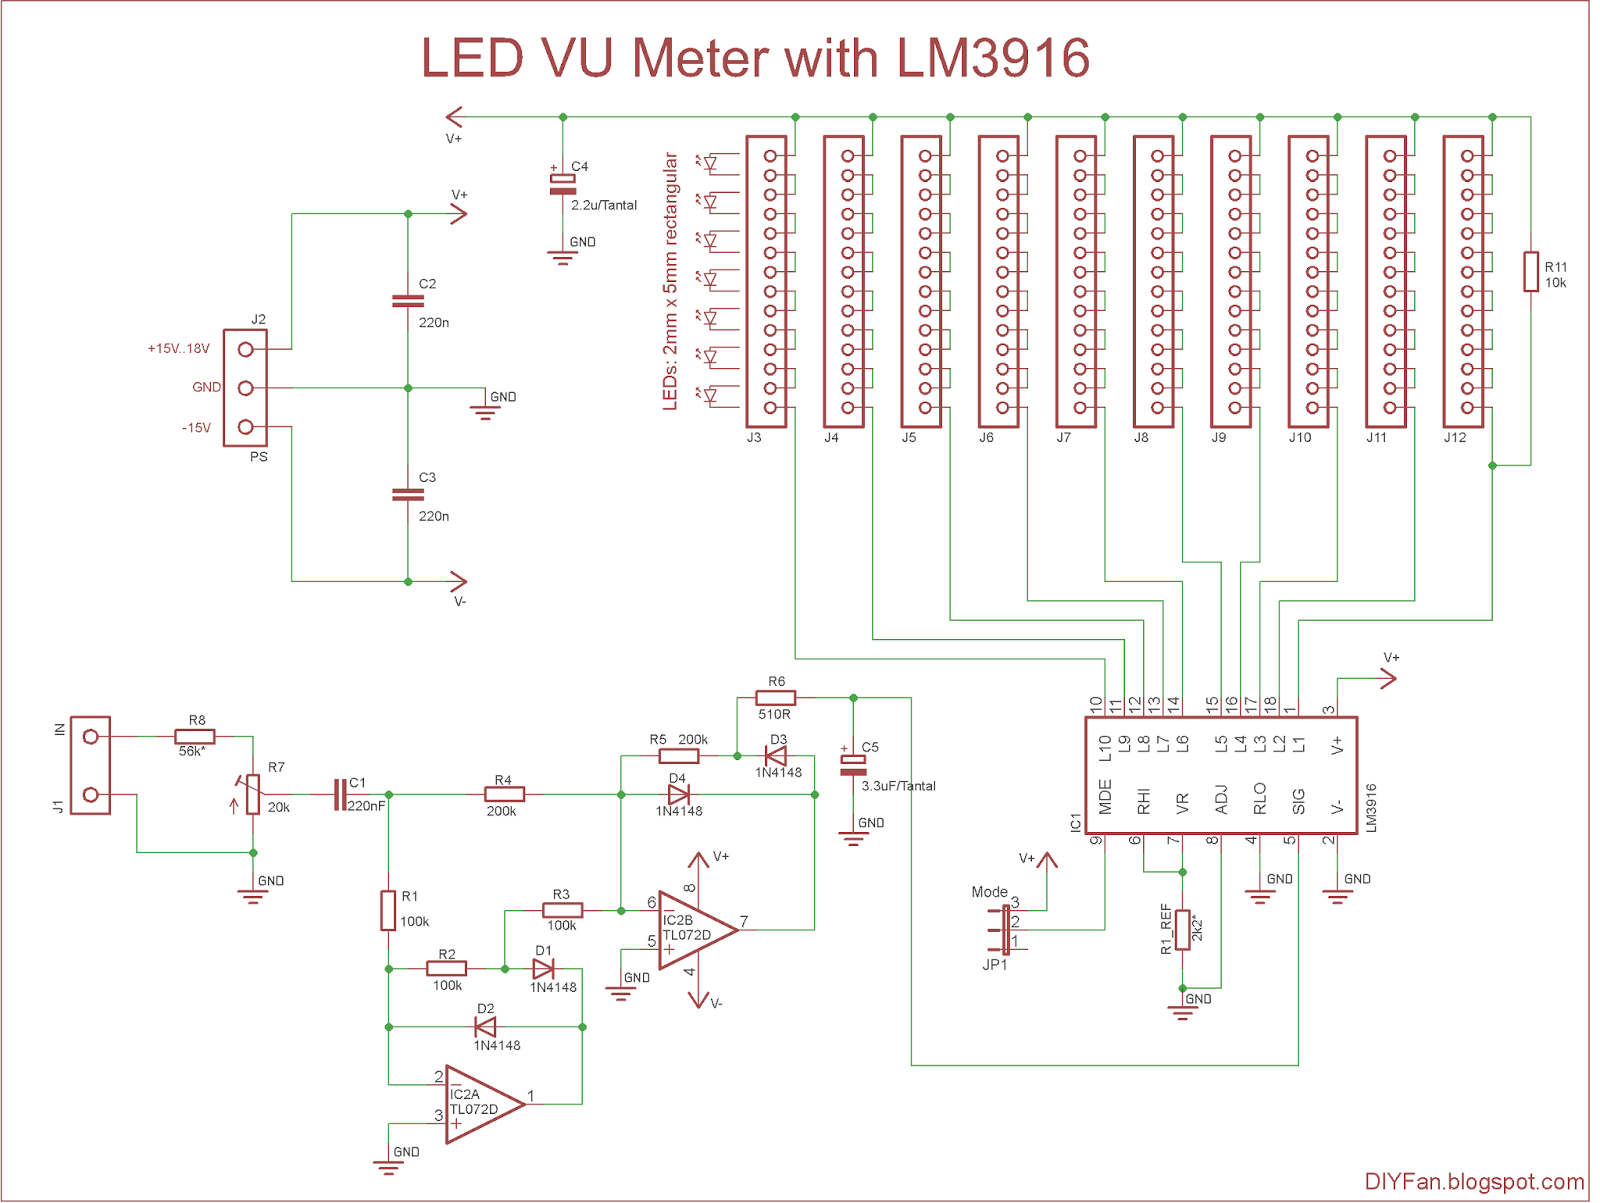 Perceptueel Bibliografie groep DIYfan: LED VU Meter with LM3916